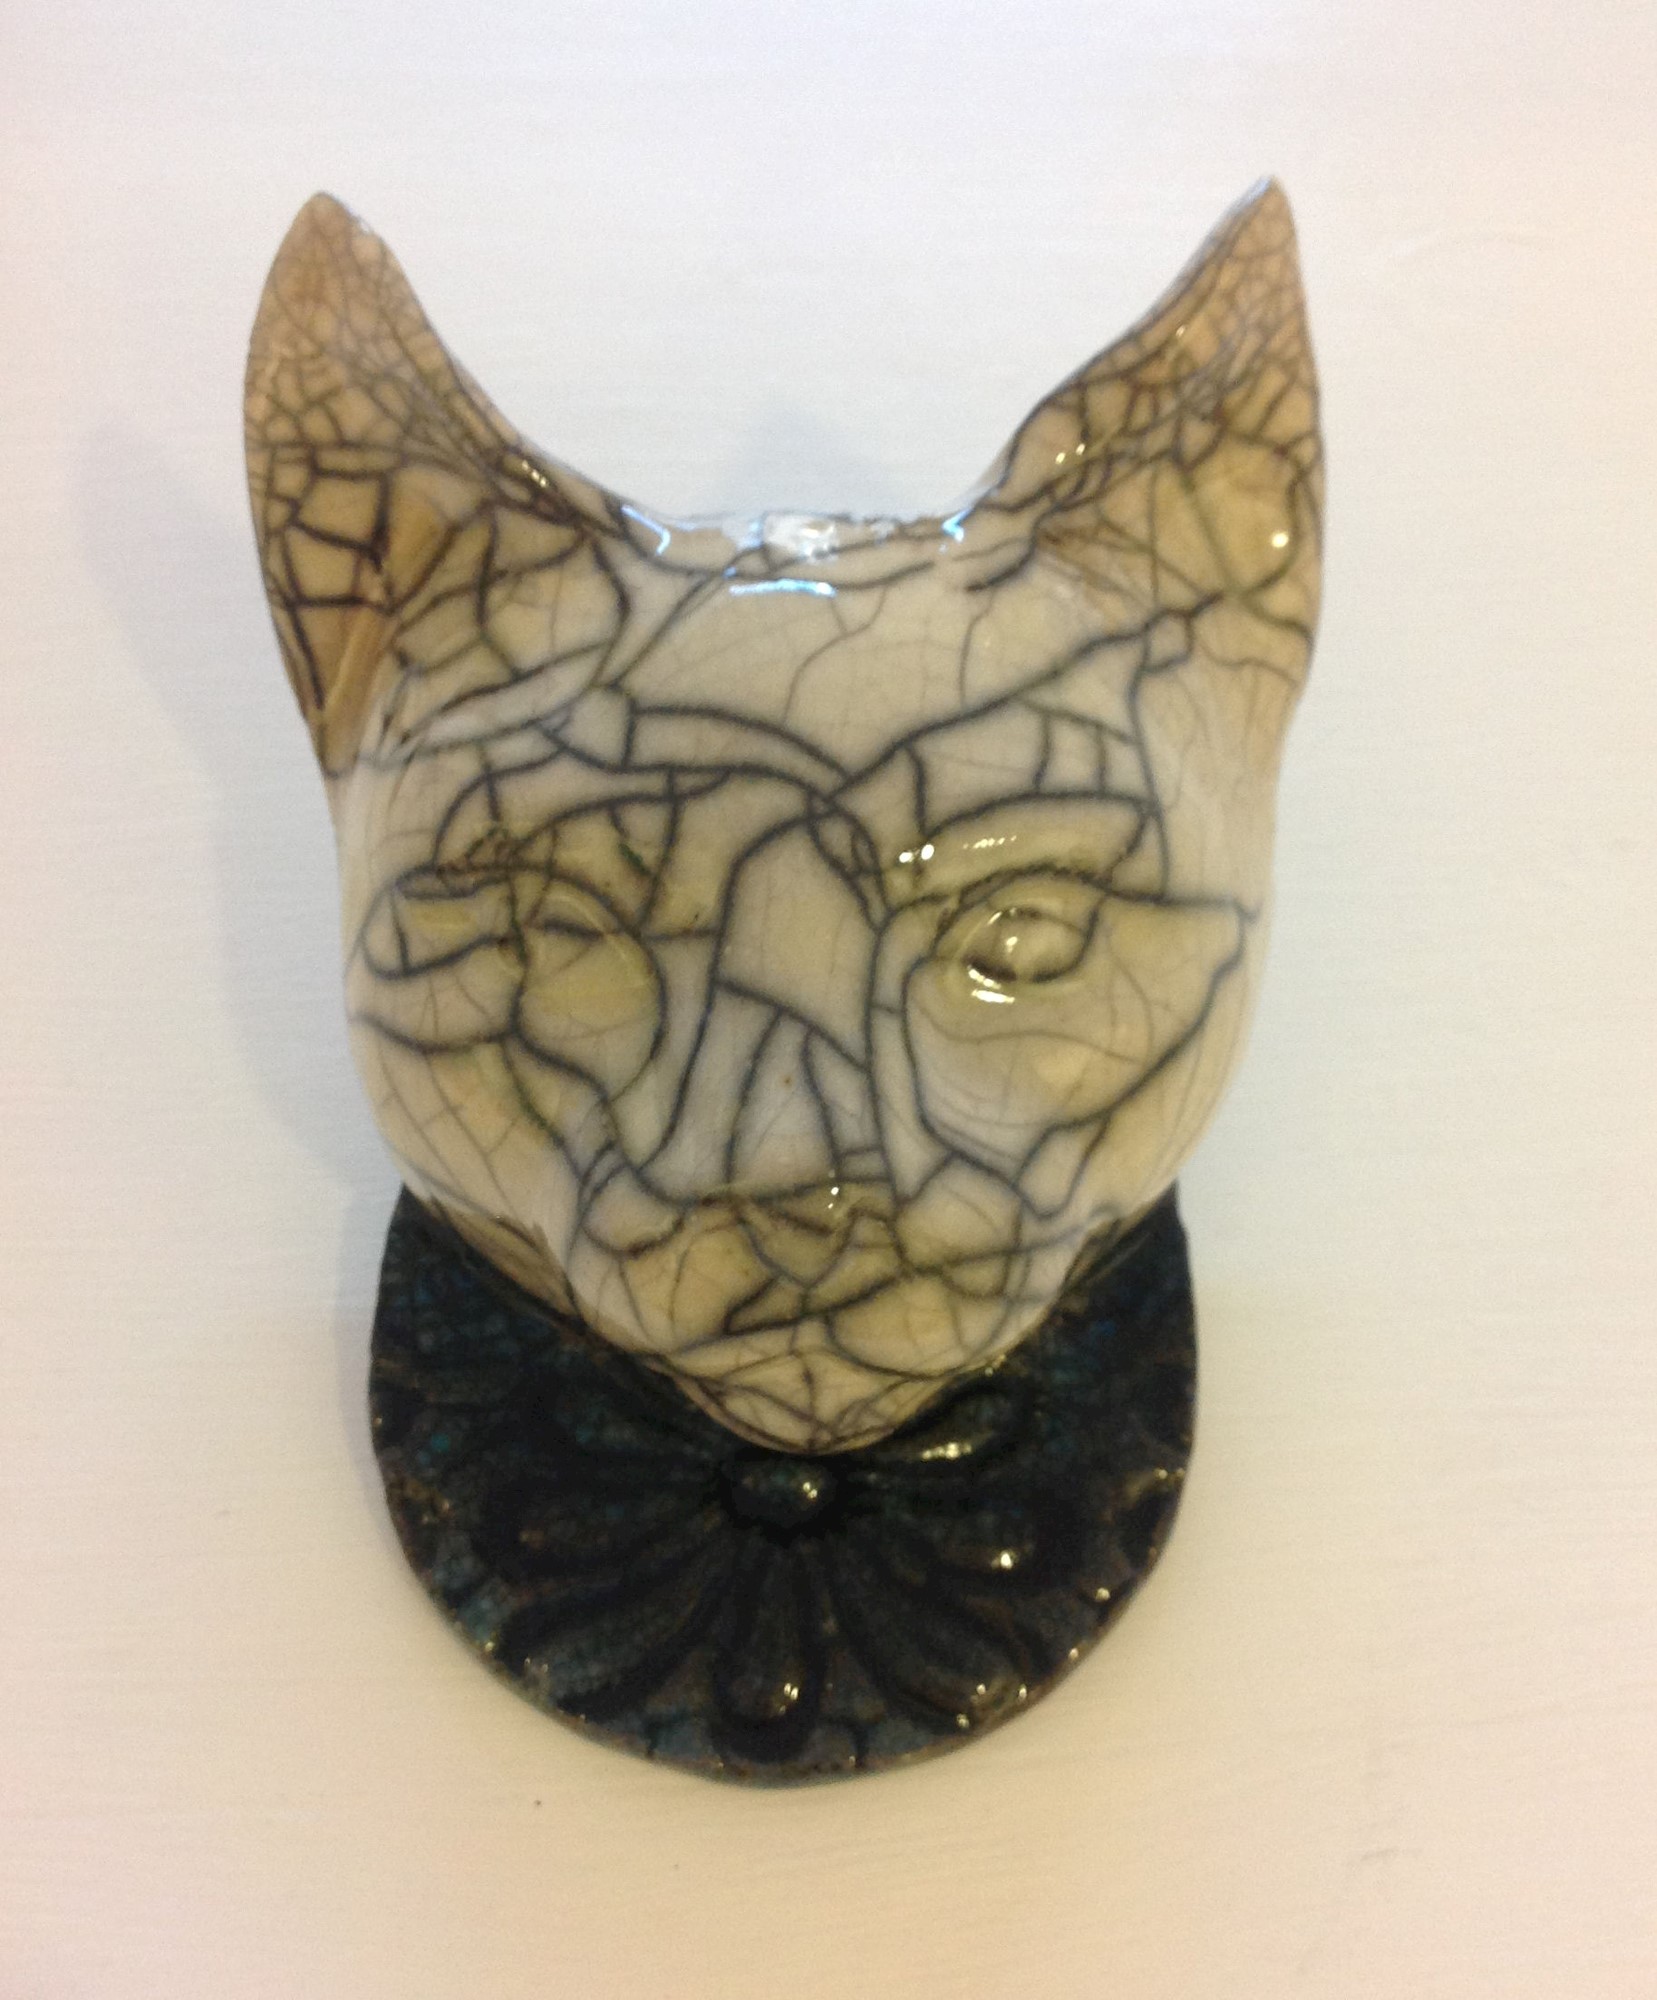 'Cat Mask II' by artist Julian Smith